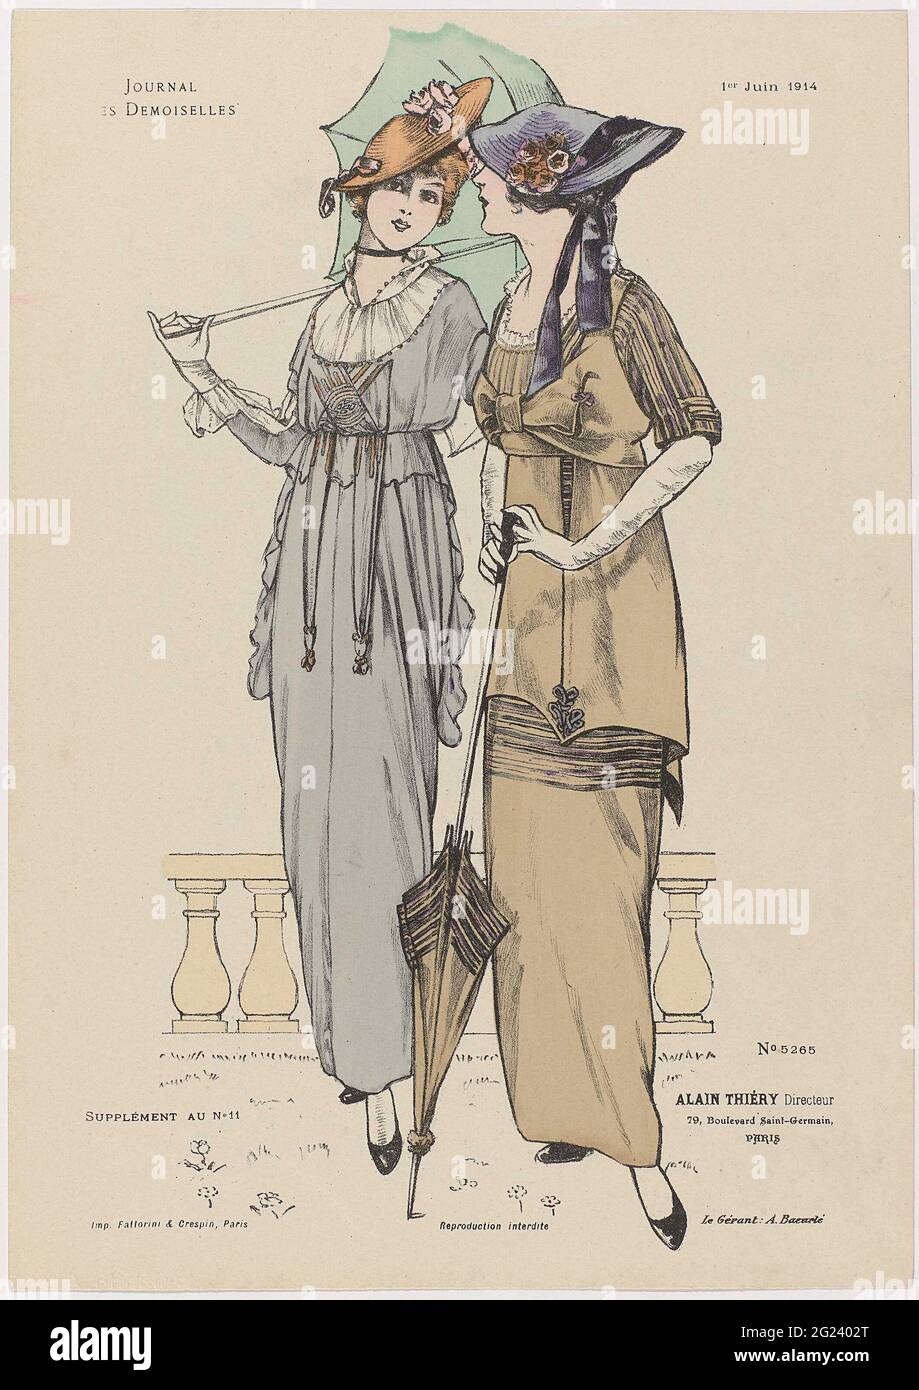 Journal des Demoiselles. Il Journal des Demoiselles è stato pubblicato dal  1833 come rivista di moda per le giovani donne. Nella stagione 1914-1915  presentava una gonna di lunghezza della caviglia così stretta